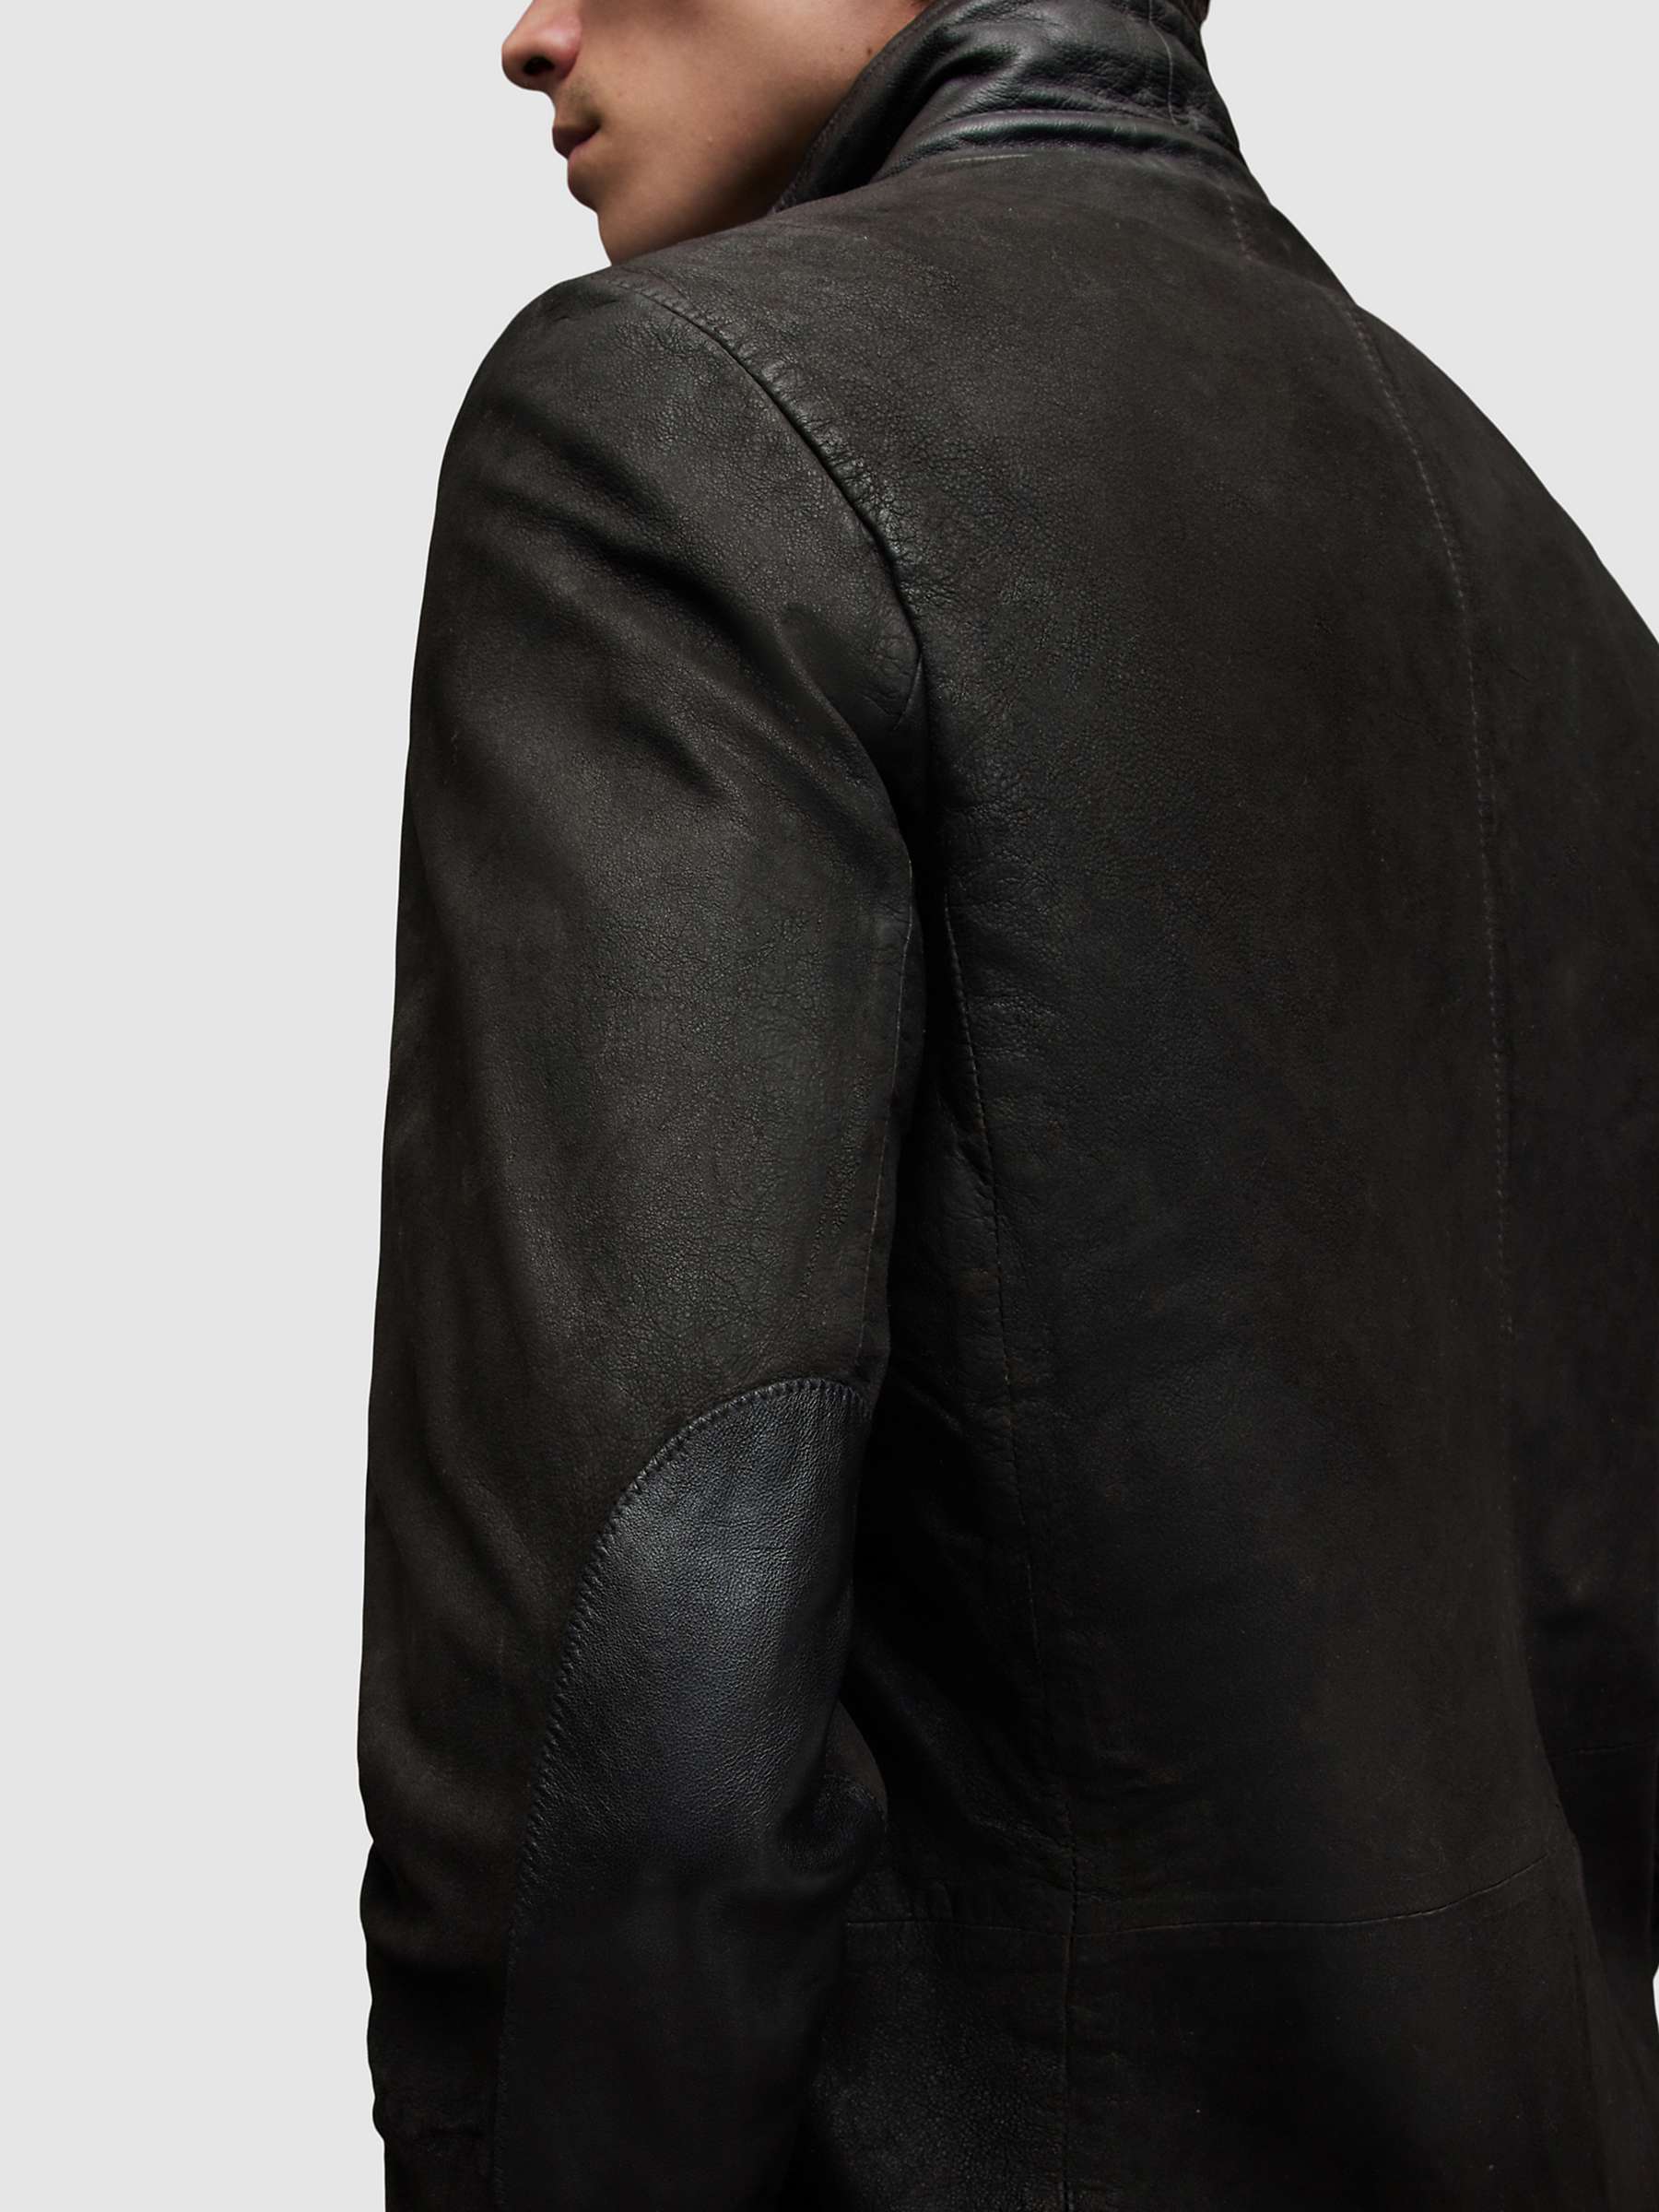 Buy AllSaints Survey Brushed Leather Blazer Online at johnlewis.com